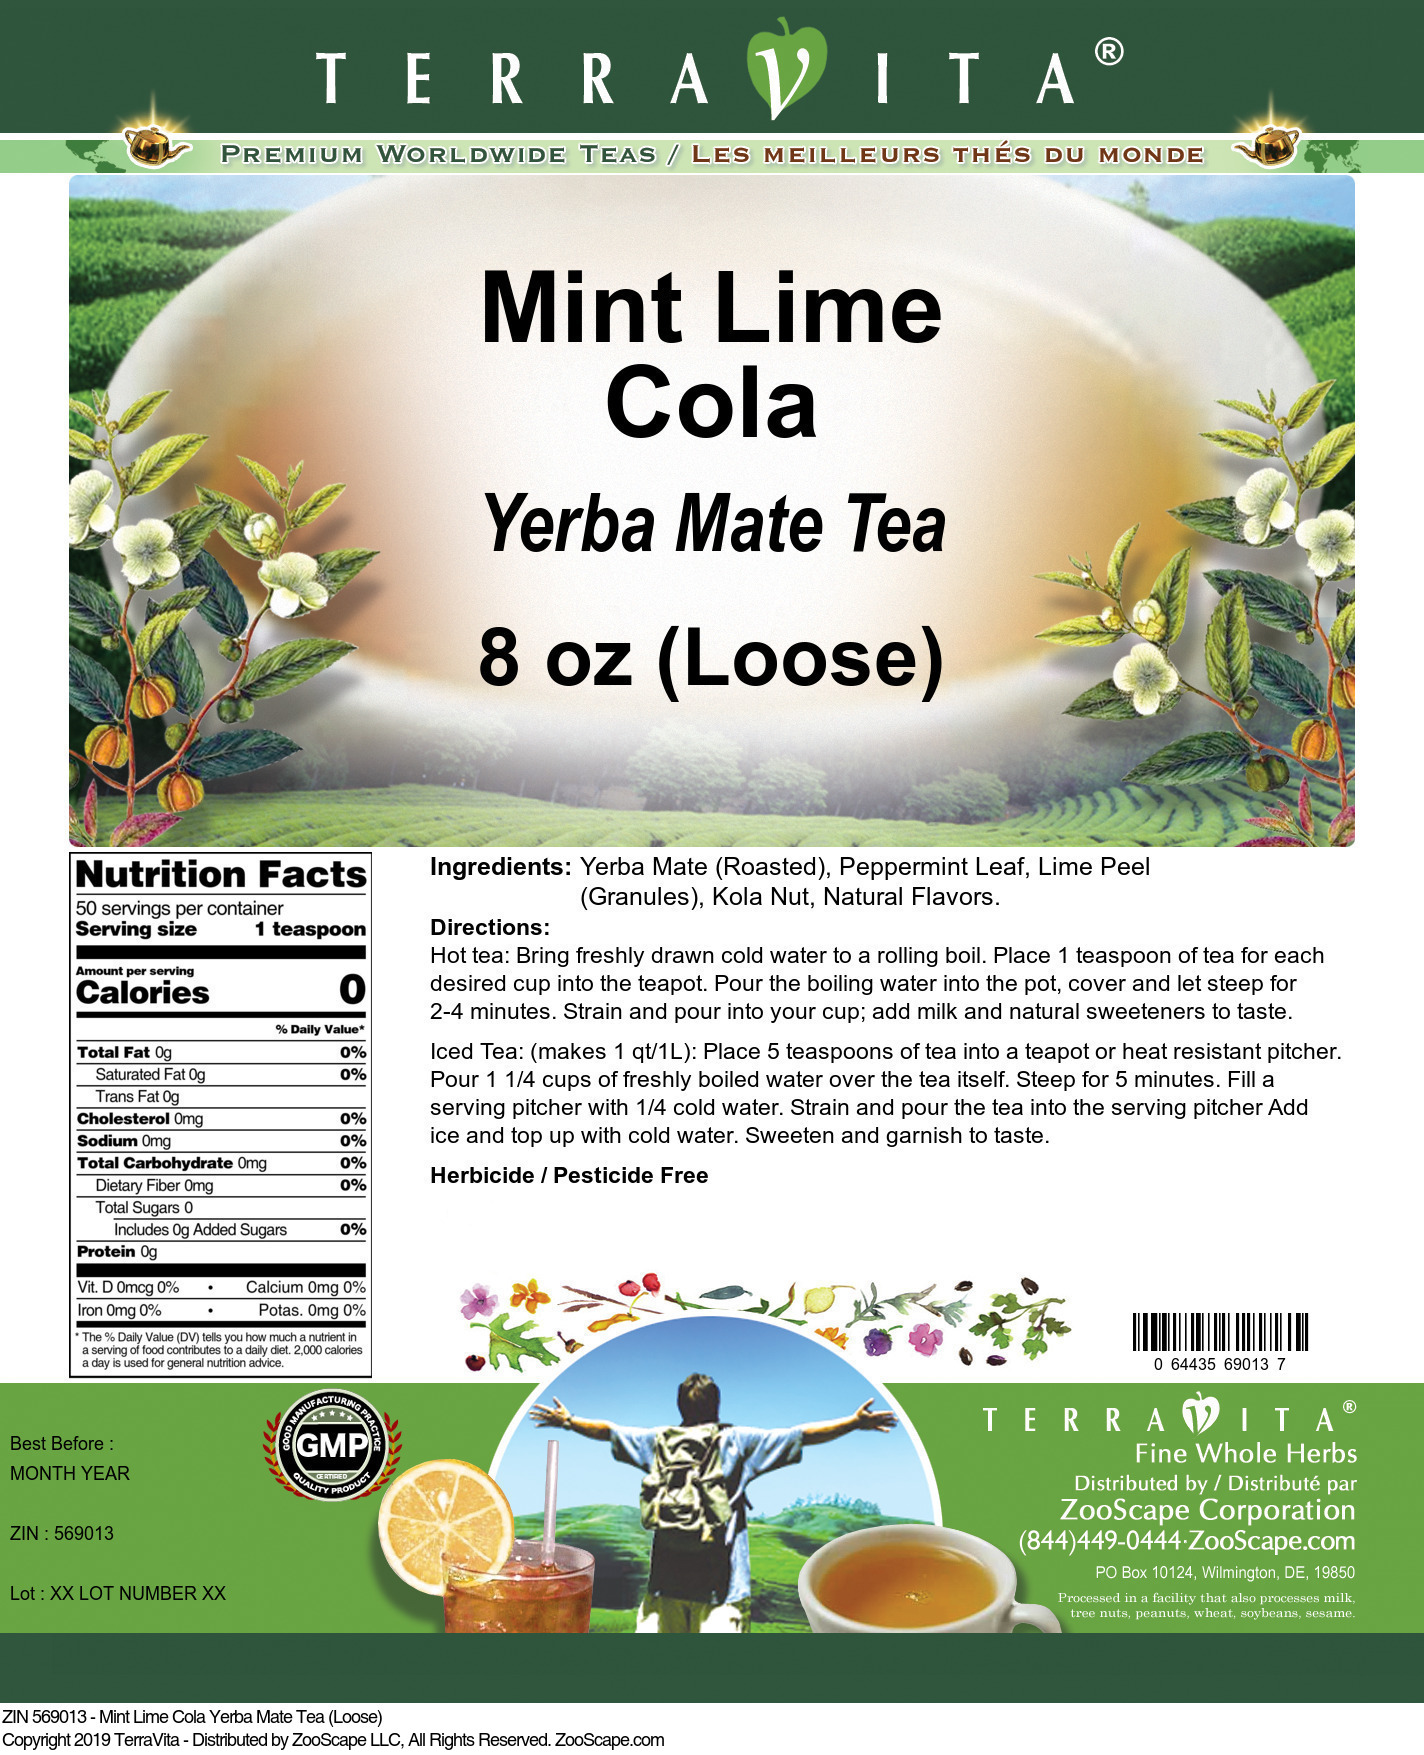 Mint Lime Cola Yerba Mate Tea (Loose) - Label